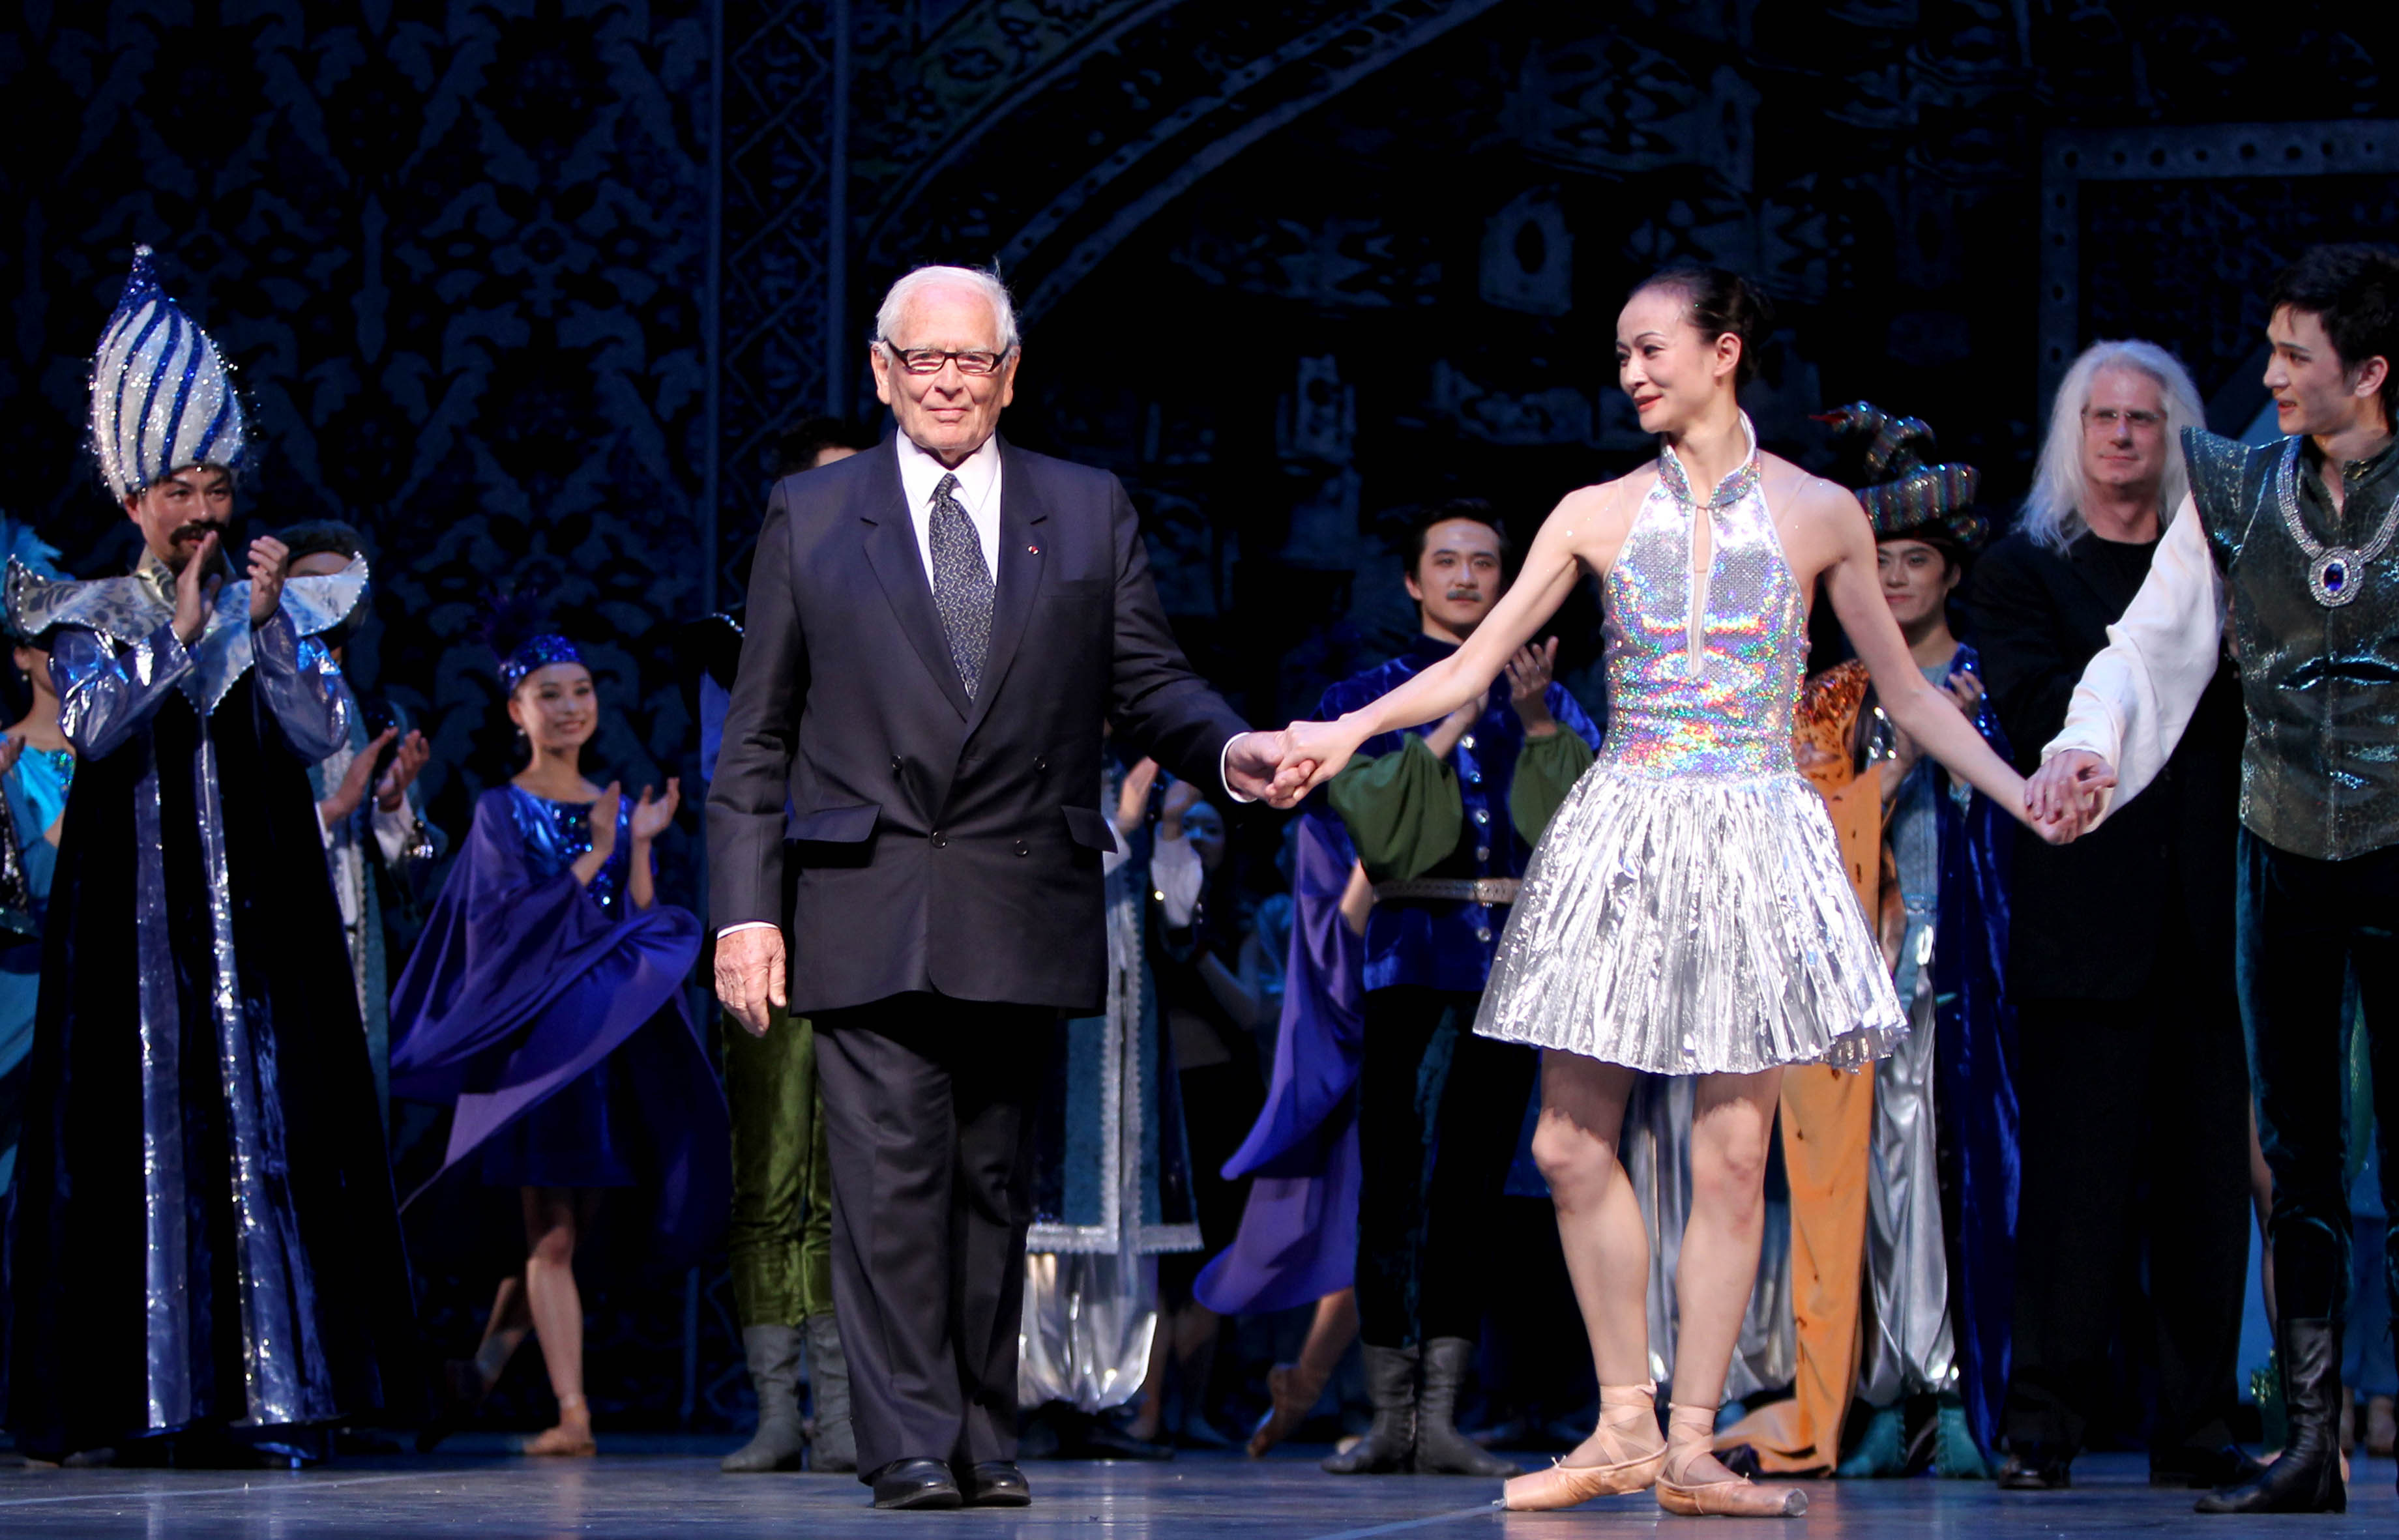 新華社照片，上海，2010年5月3日5月2日，88歲高齡的著名時裝設計大師皮爾·卡丹（前左一）與演員和主創人員謝幕。當日，由上海芭蕾舞團與法國著名時裝設計大師皮爾·卡丹聯合制作的原創芭蕾舞劇《馬可·波羅——最後的使命》在上海上演，皮爾·卡丹親自擔任該劇的服裝和舞美設計，為正在上海舉行的世博會獻禮。新華社記者陳建力攝